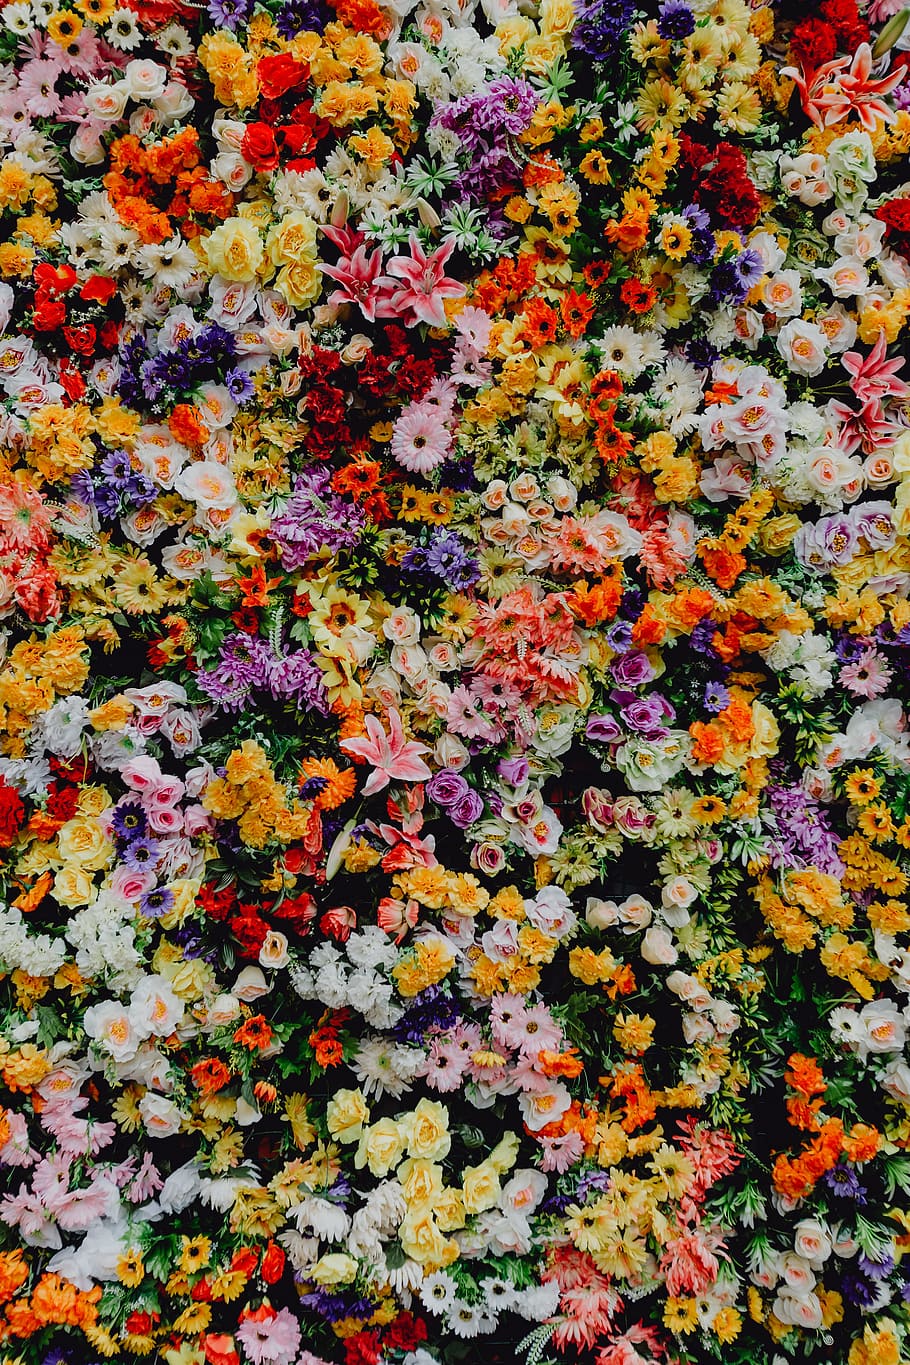 fest santo antonio, -, vários, parede de fundo de flor de cor, museu, lisboa, portugal, flores, férias, colorido